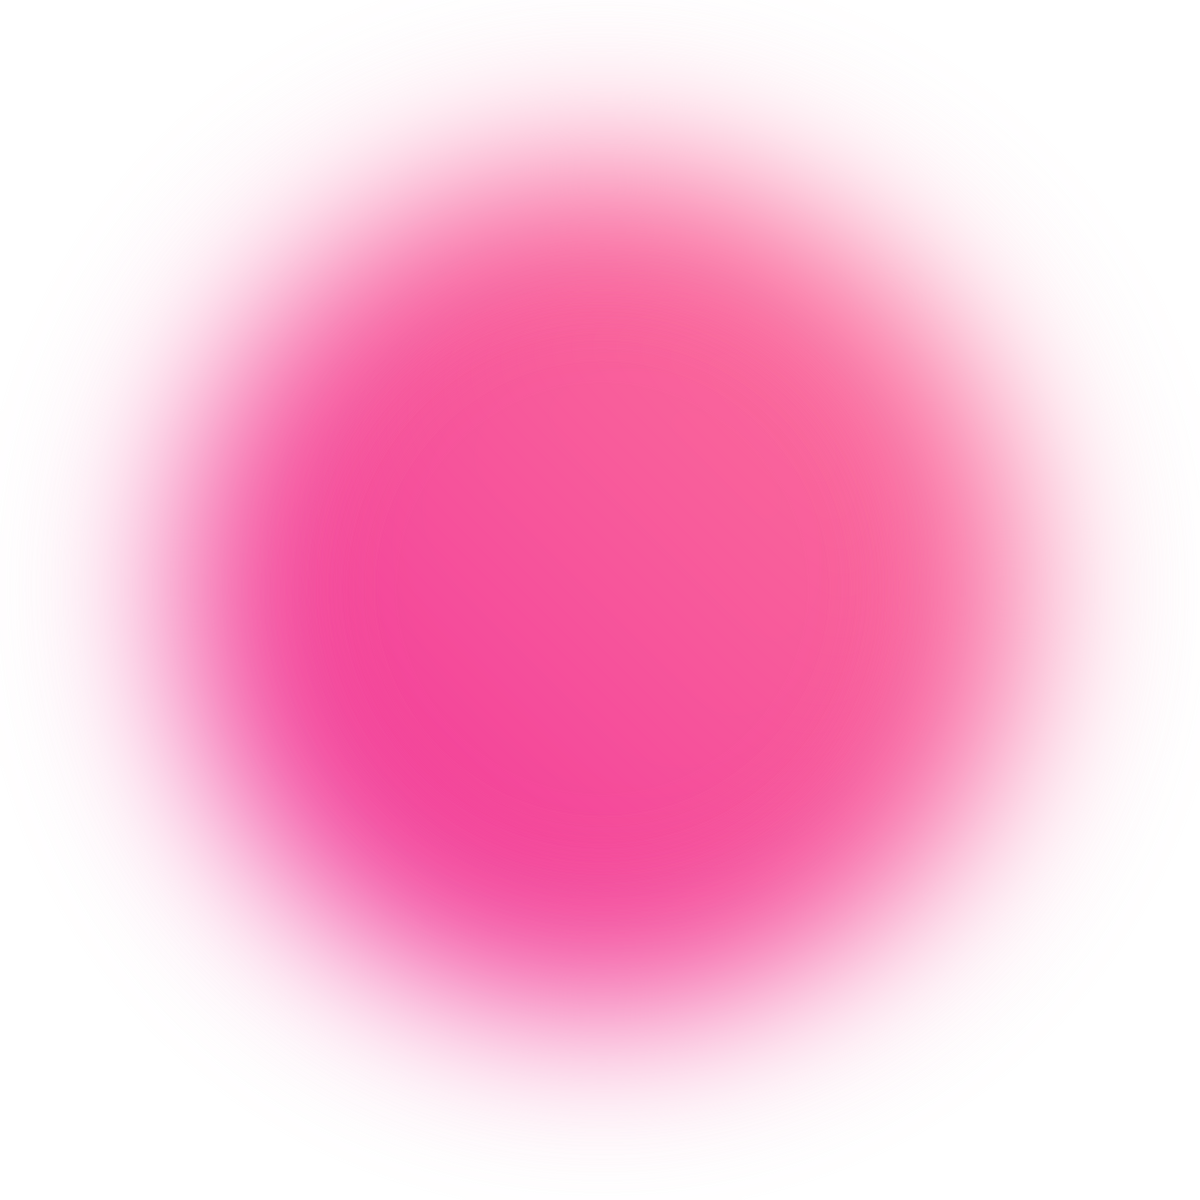 Pink Circle Blur Gardient